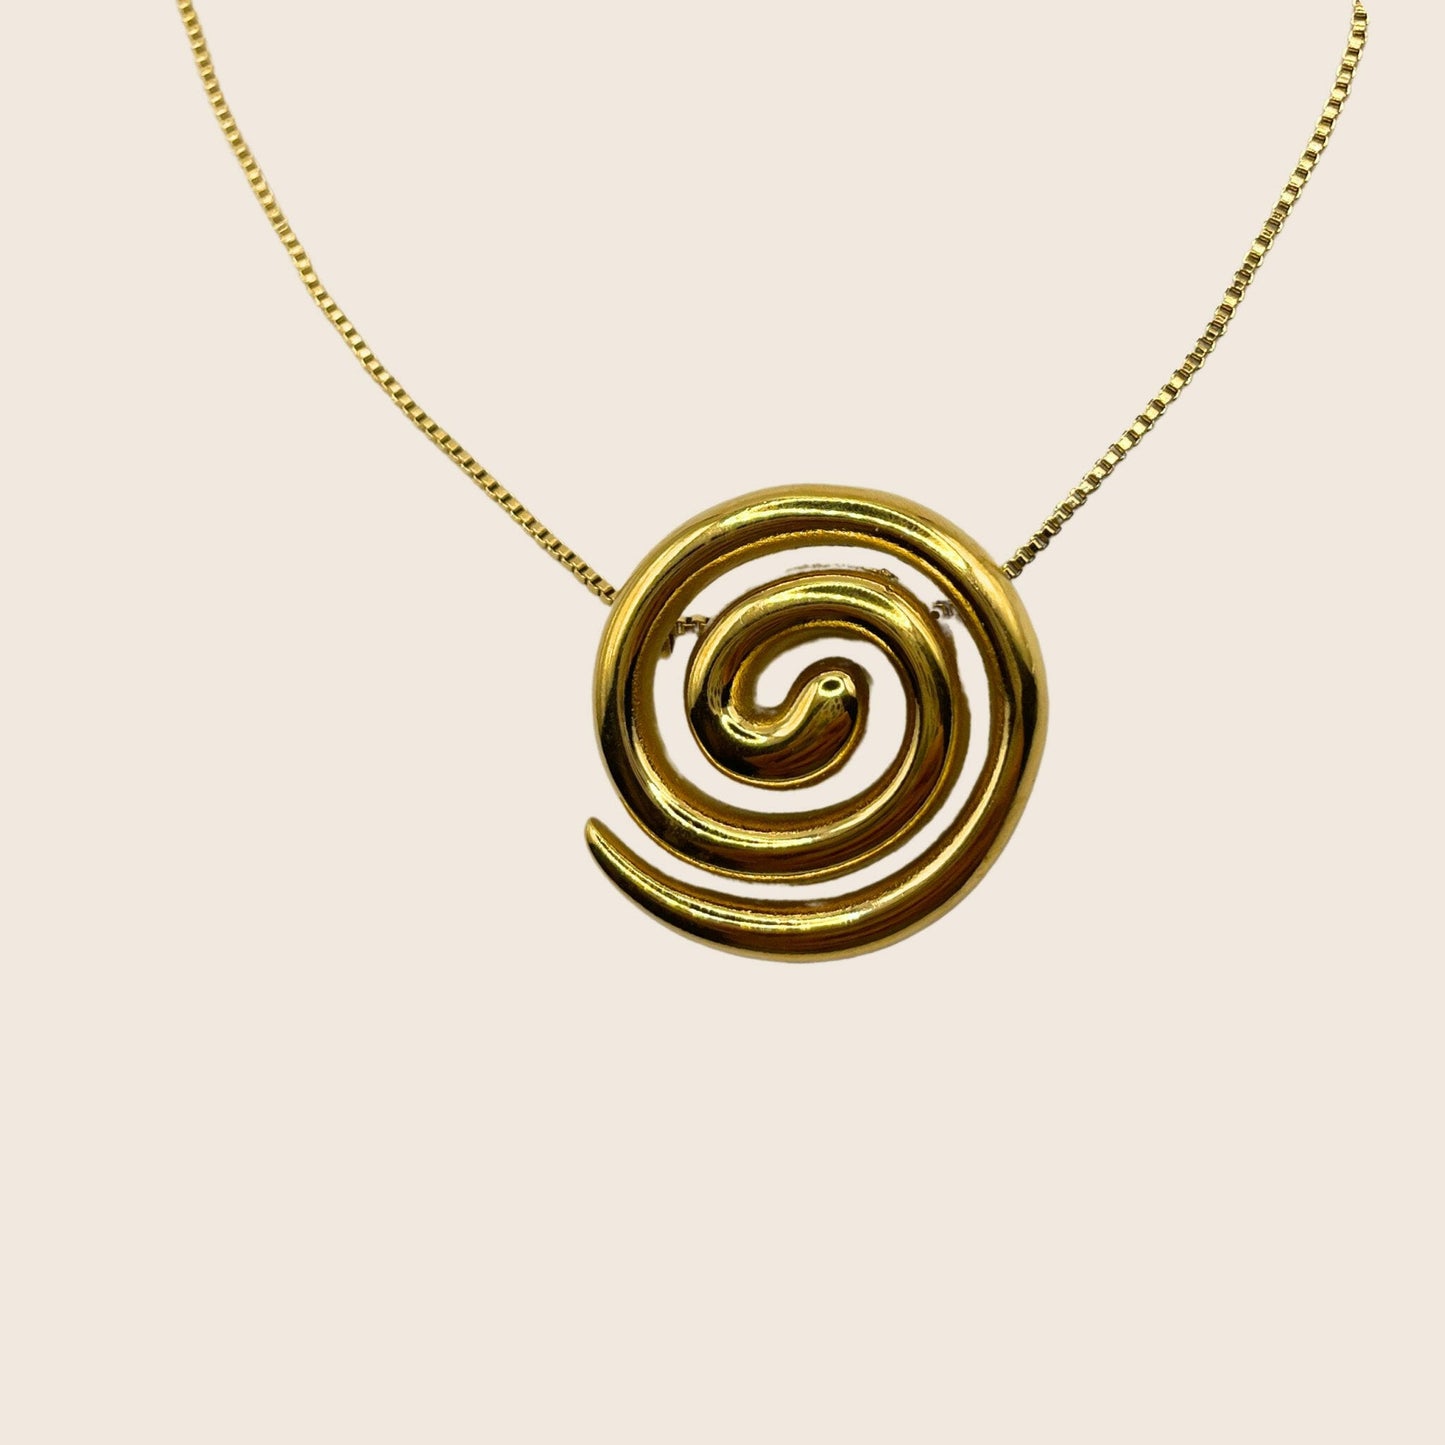 Whirl Necklace - Lemon Lua Whirl Necklace Lemon Lua Lemon Lua Whirl Necklace Whirl Necklace